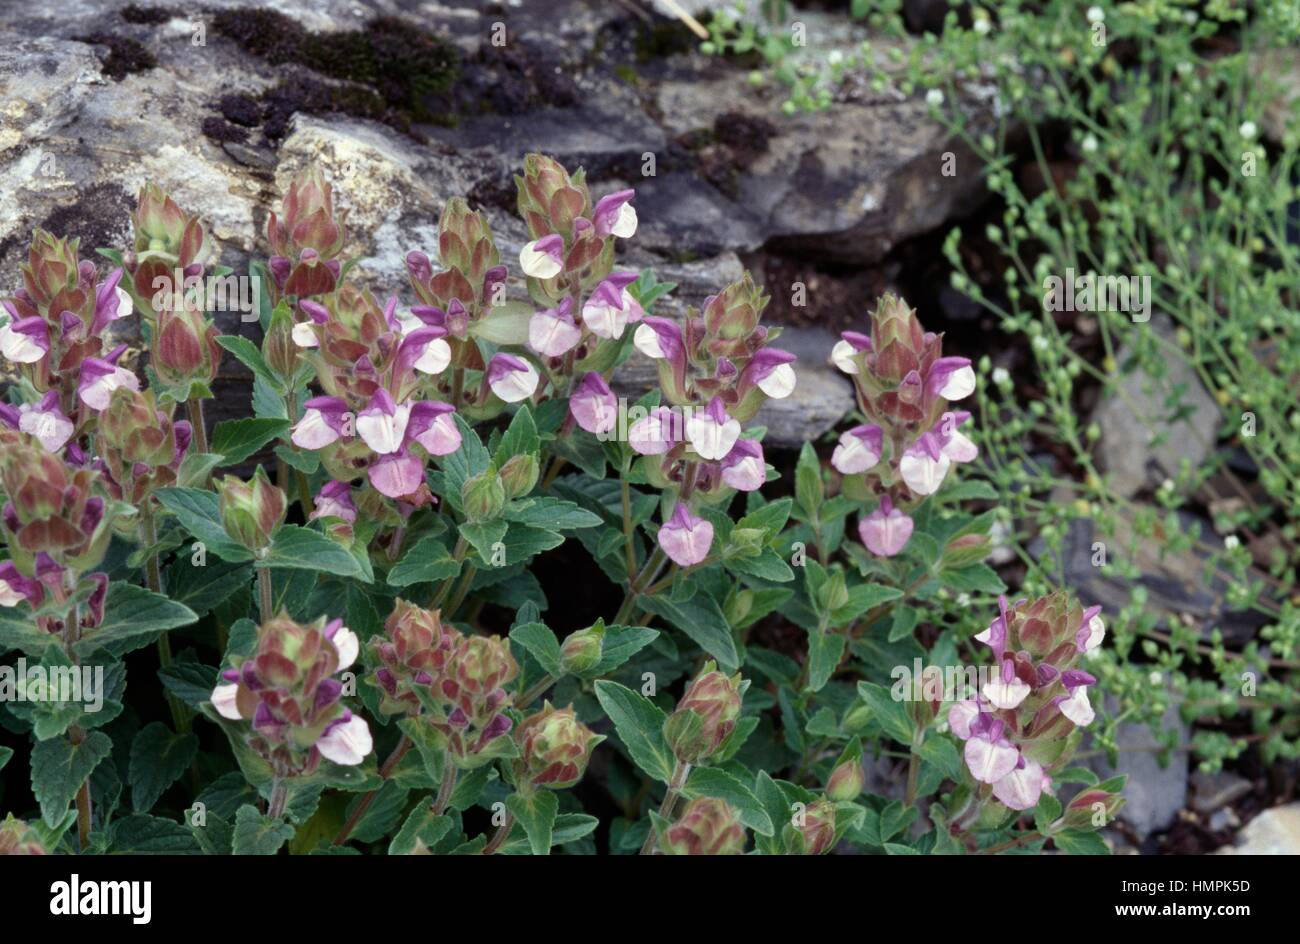 Flowering Alpine skullcap (Scutellaria alpina), Asteraceae. Stock Photo